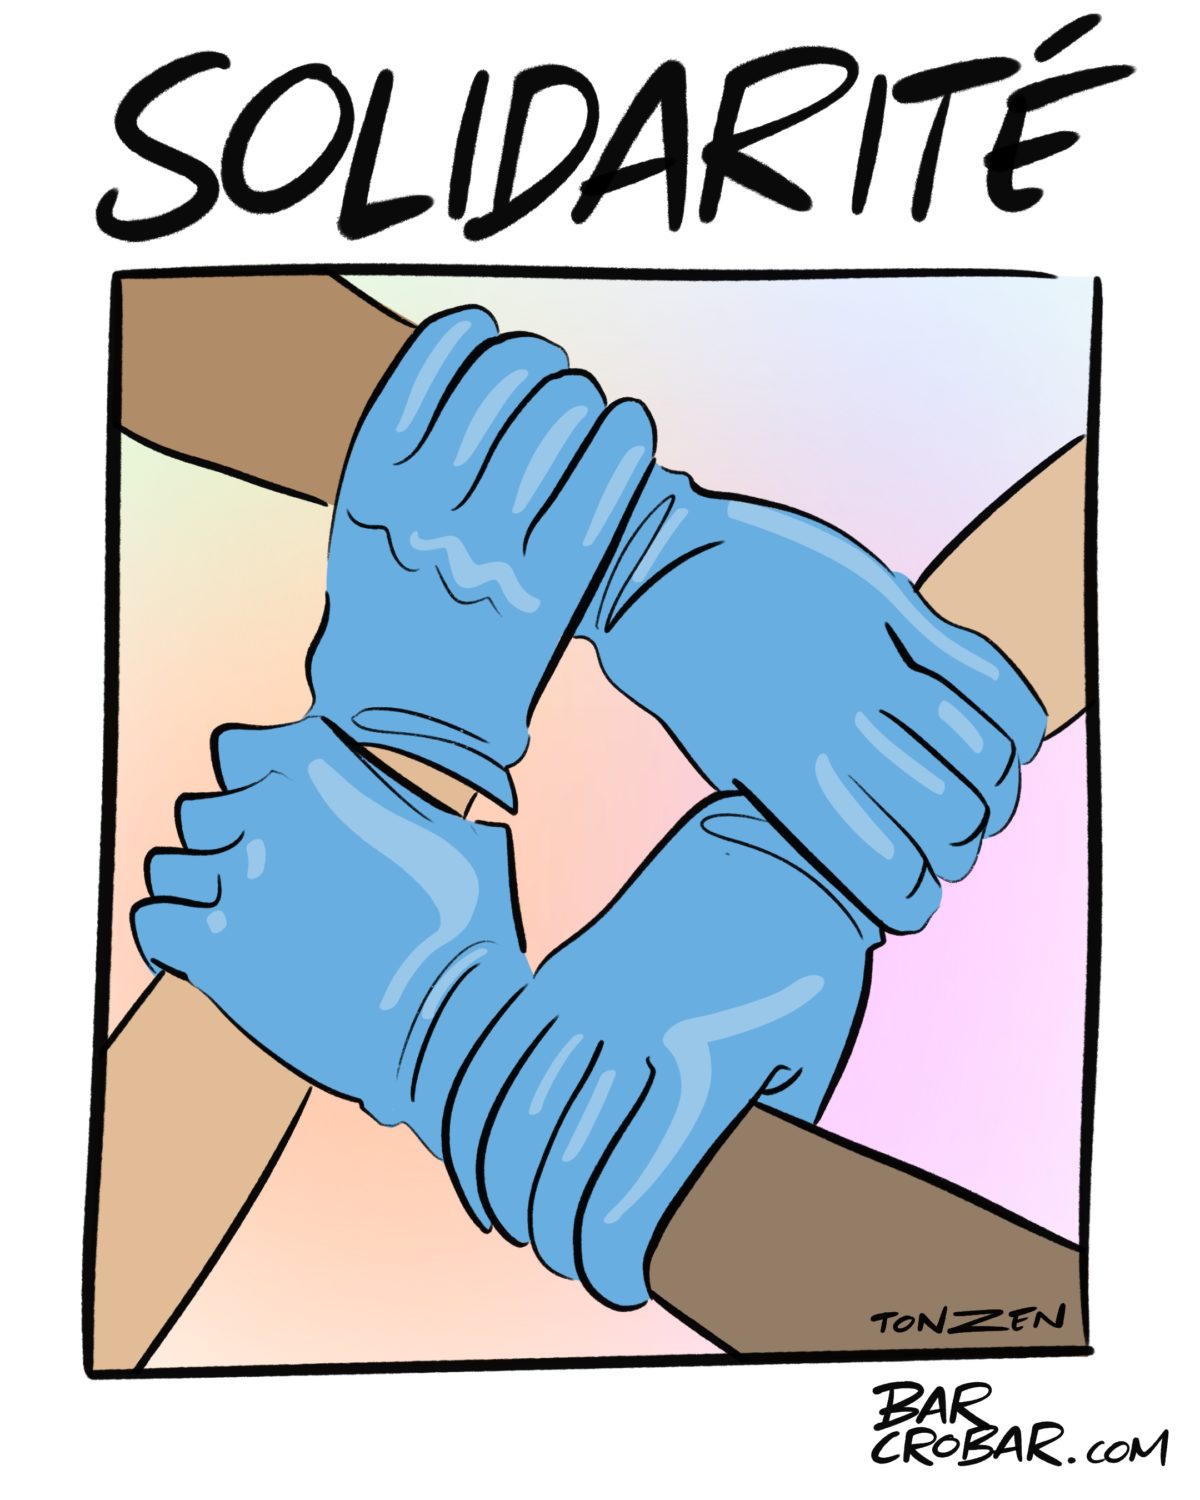 Les actions de solidarité se multiplient en Romandie